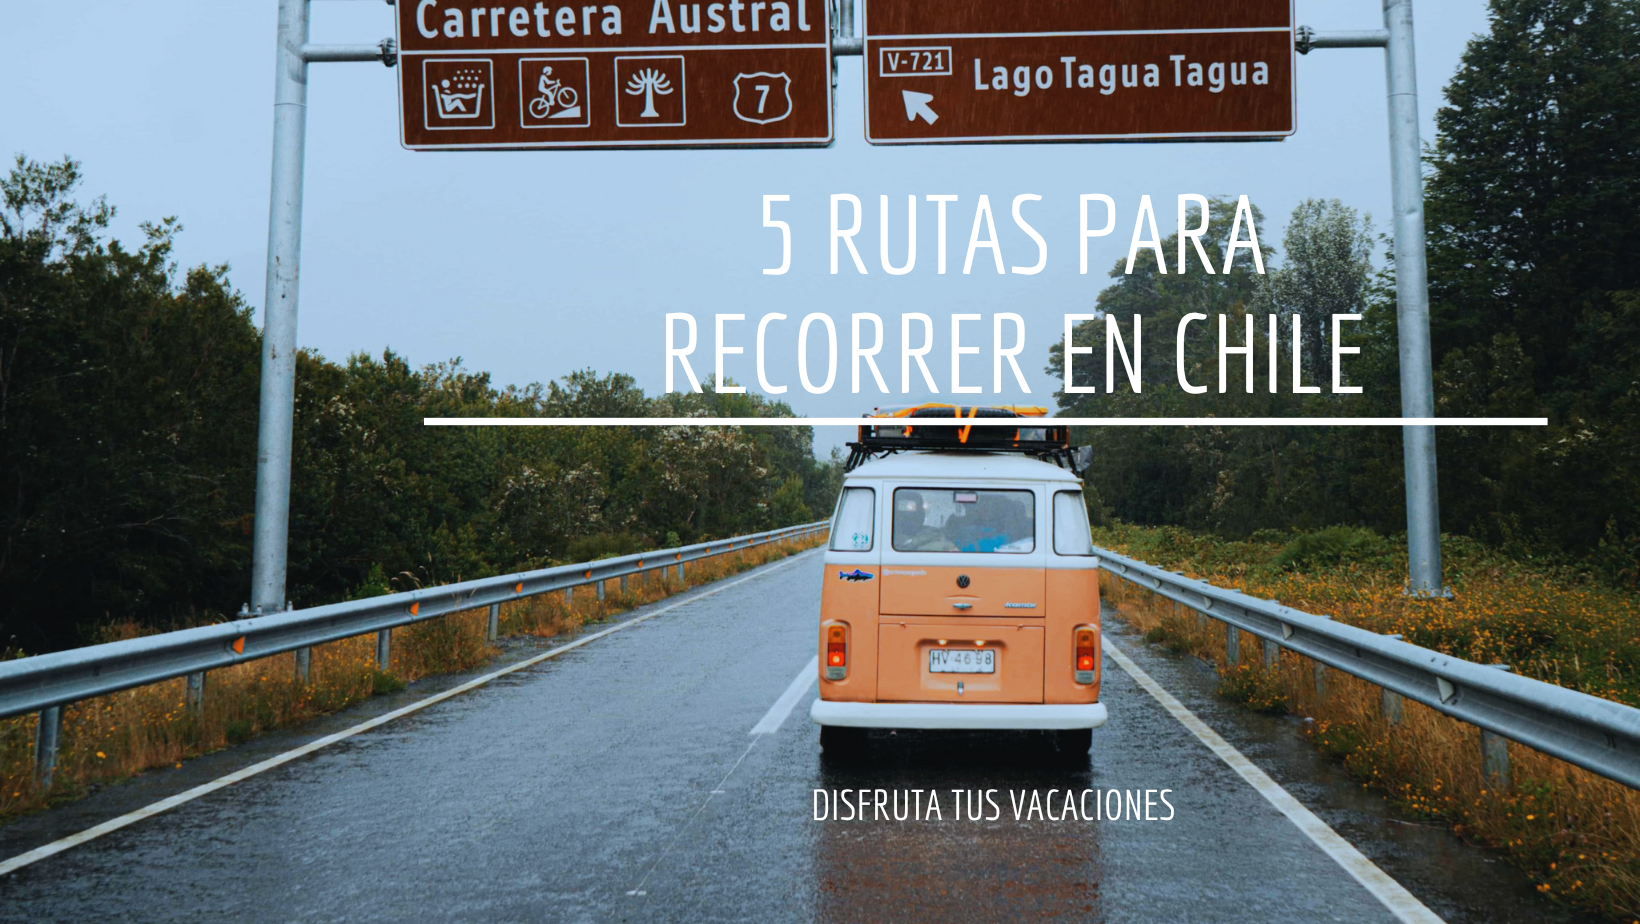 5 Rutas Para Recorrer en Chile